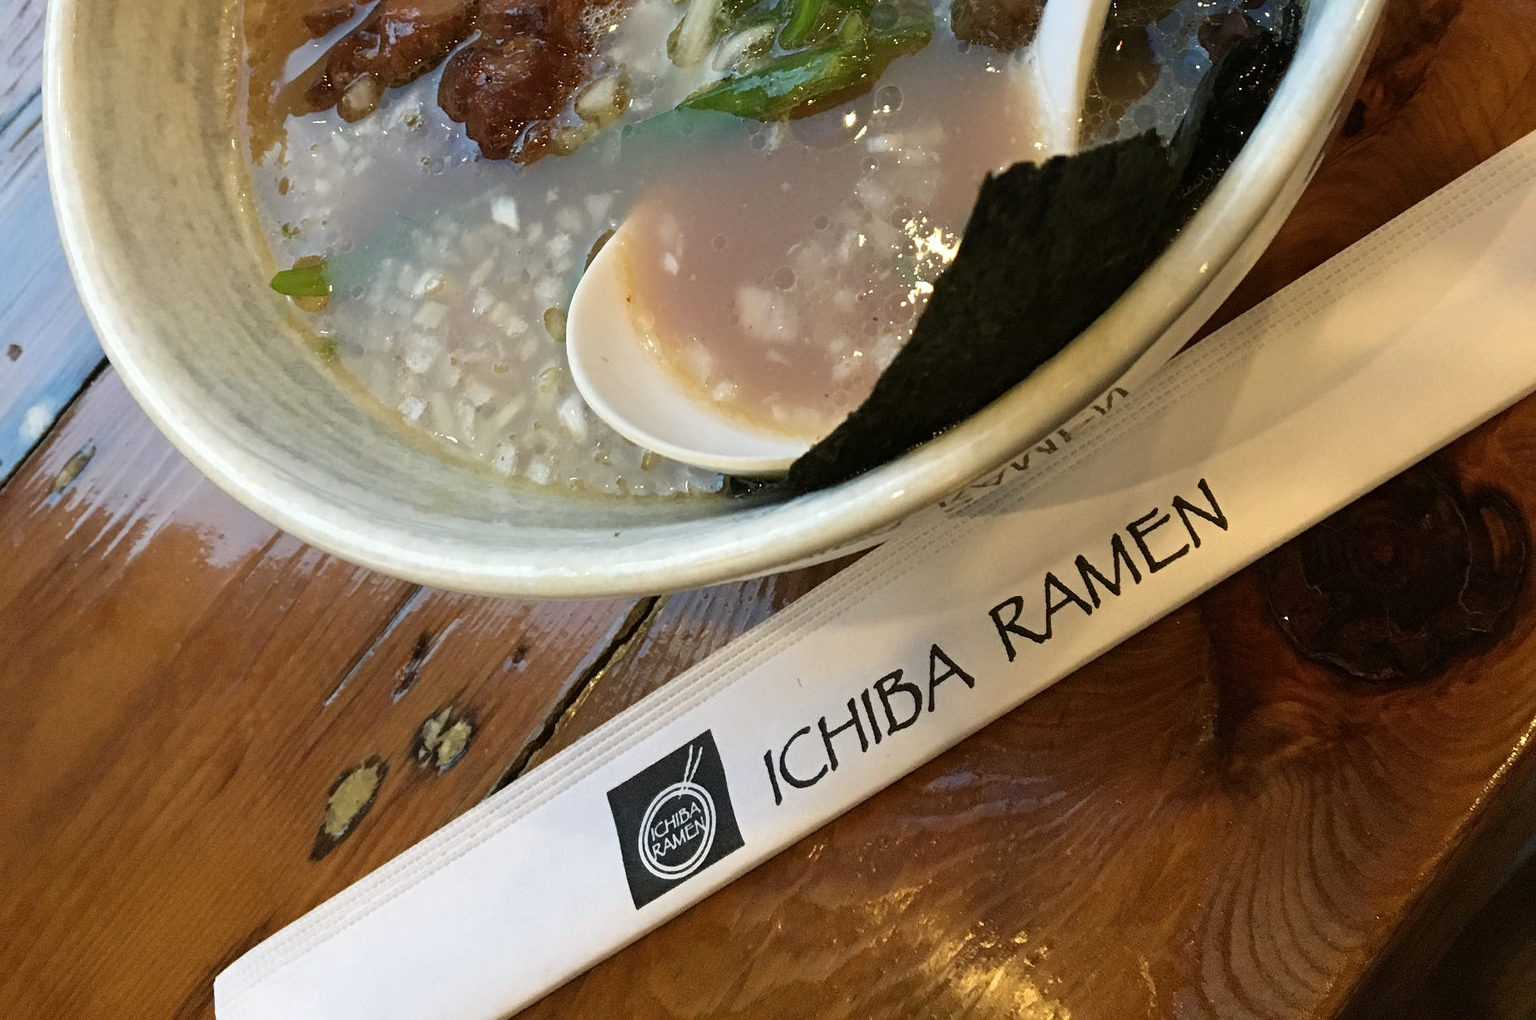 A bowl of ramen and a pair of chopsticks from Ichiba Ramen